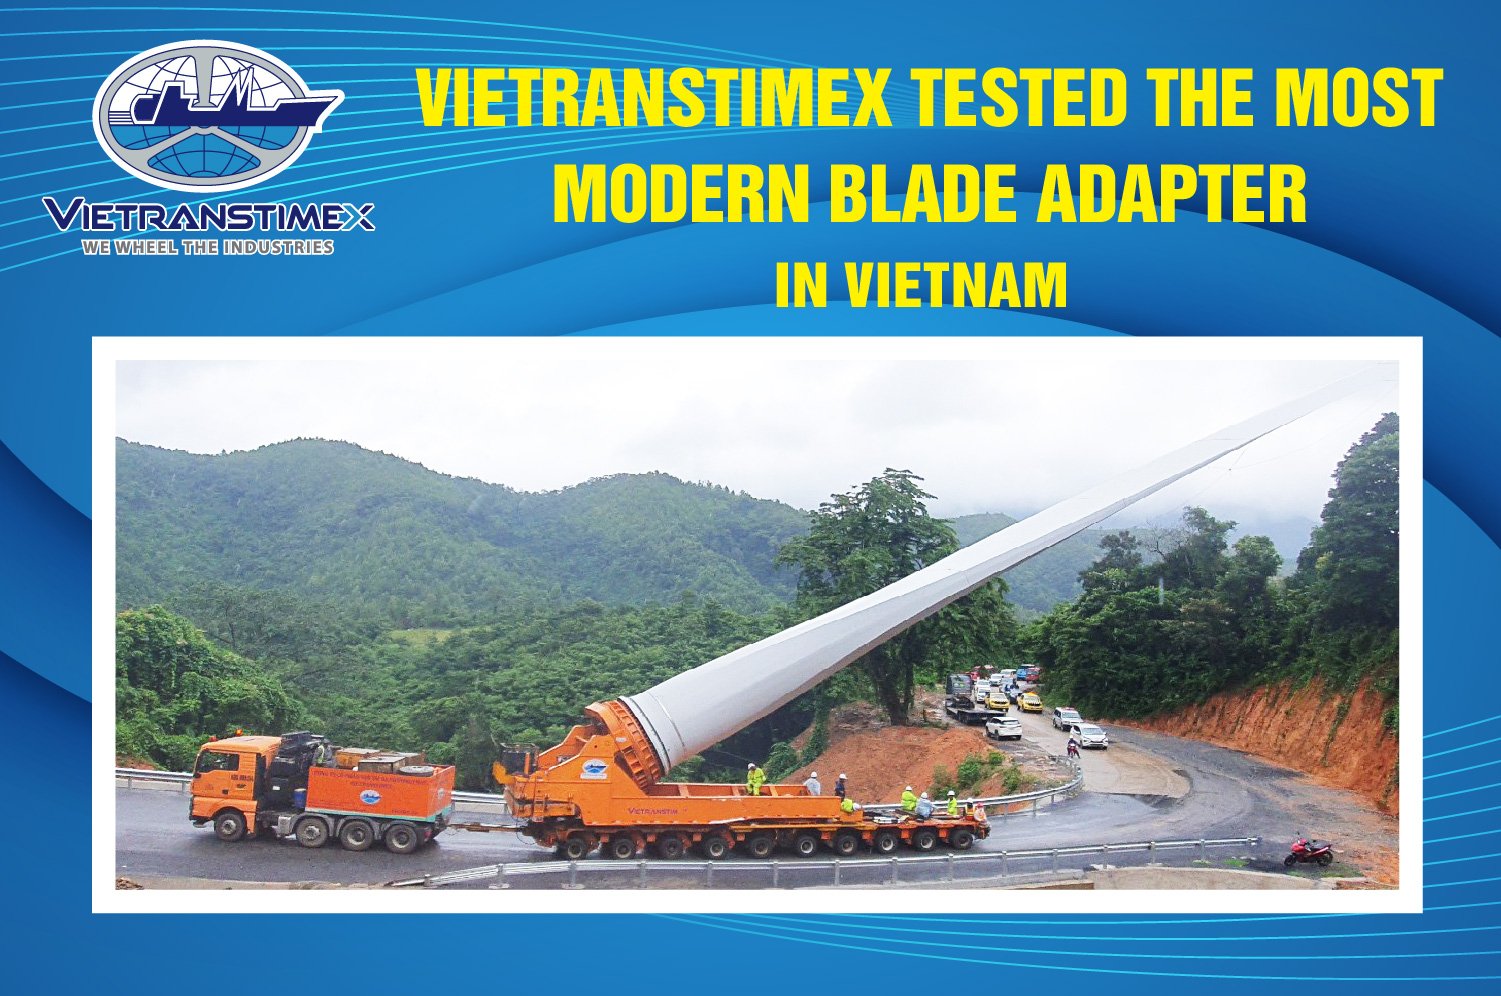 Vietranstimex Thử Nghiệm Blade Adapter Vận Chuyển Cánh Quạt Điện Gió Hiện Đại Nhất Việt Nam